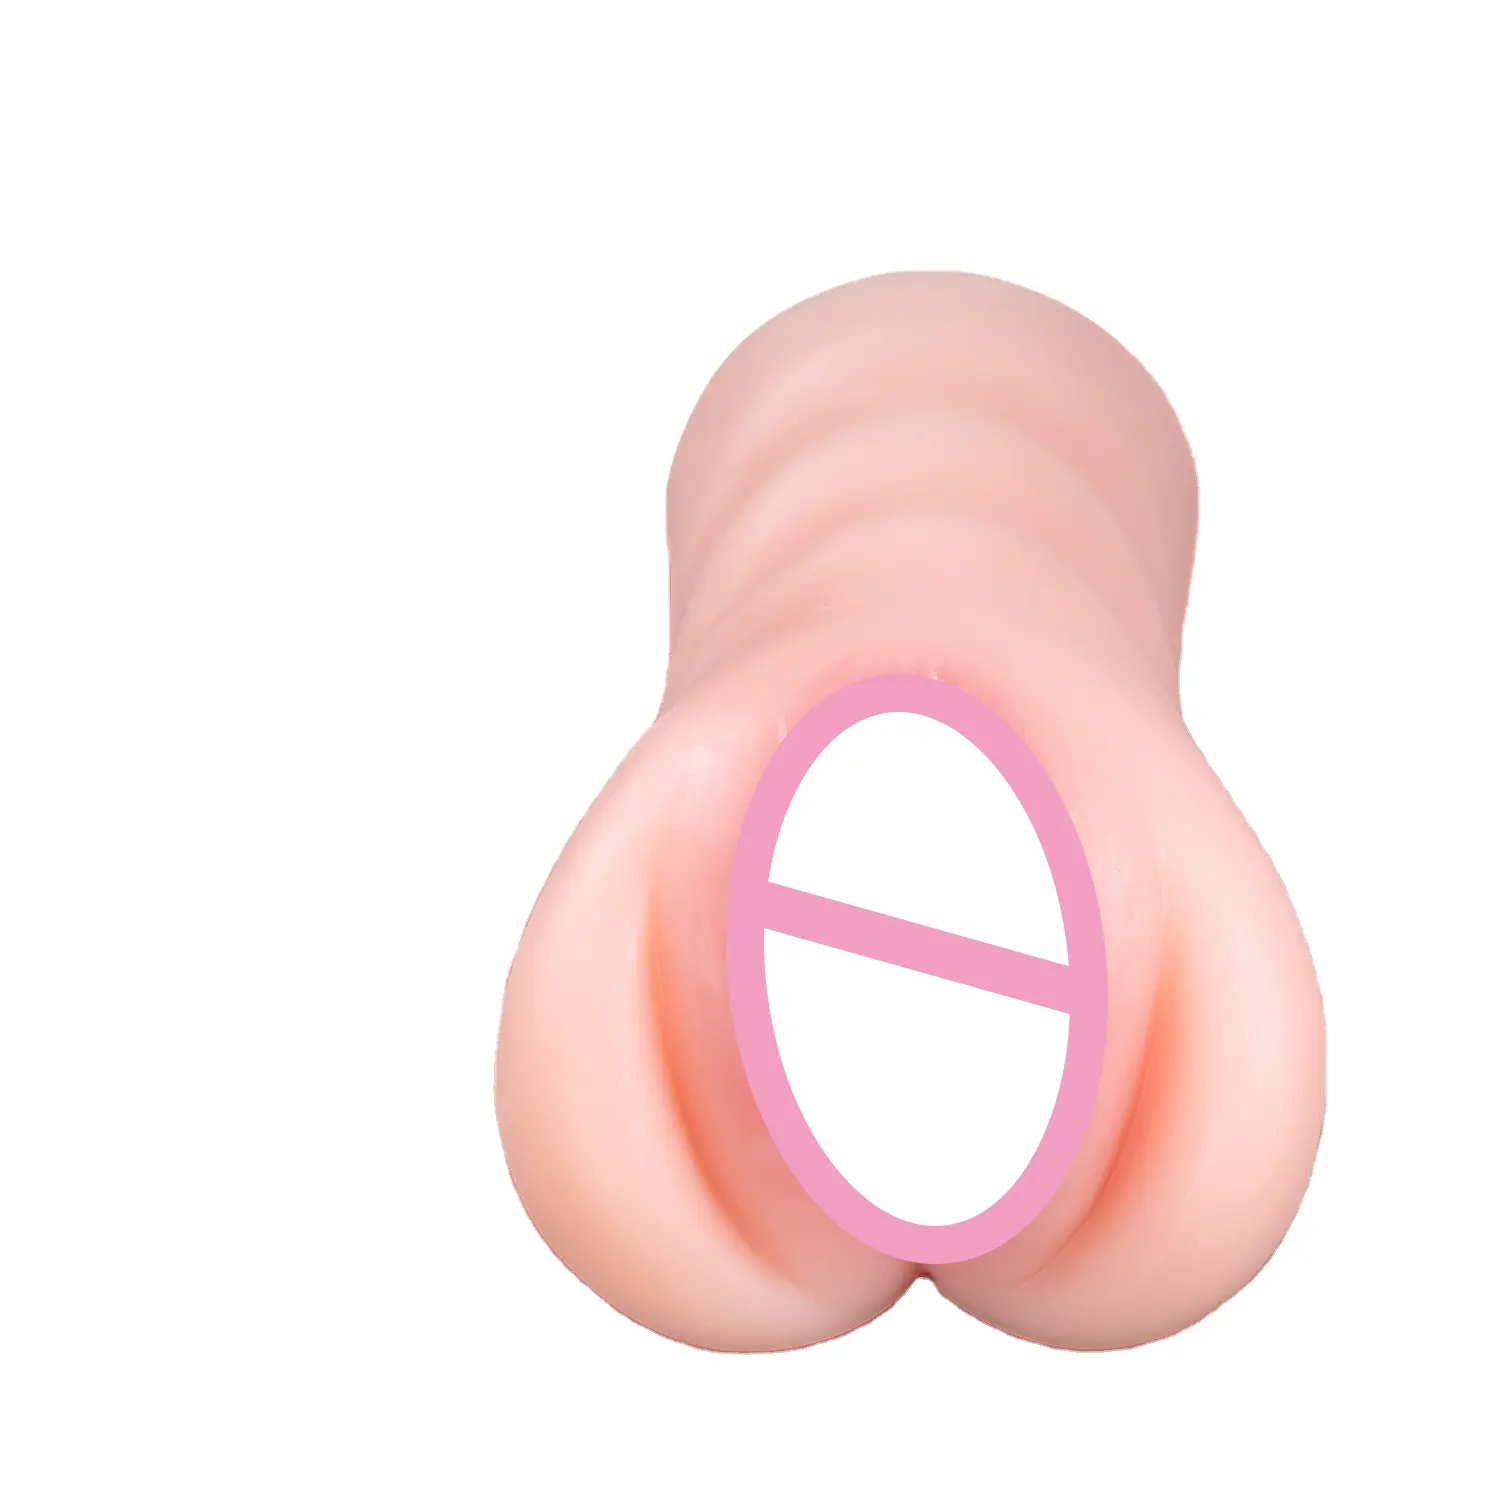 جهاز استمناء للرجال كس حقيقي من السيليكون مكون من مهبل مشدود شرجي للرجال للكبار ألعاب جنسية جنسية دمى كس تكشف الشرج